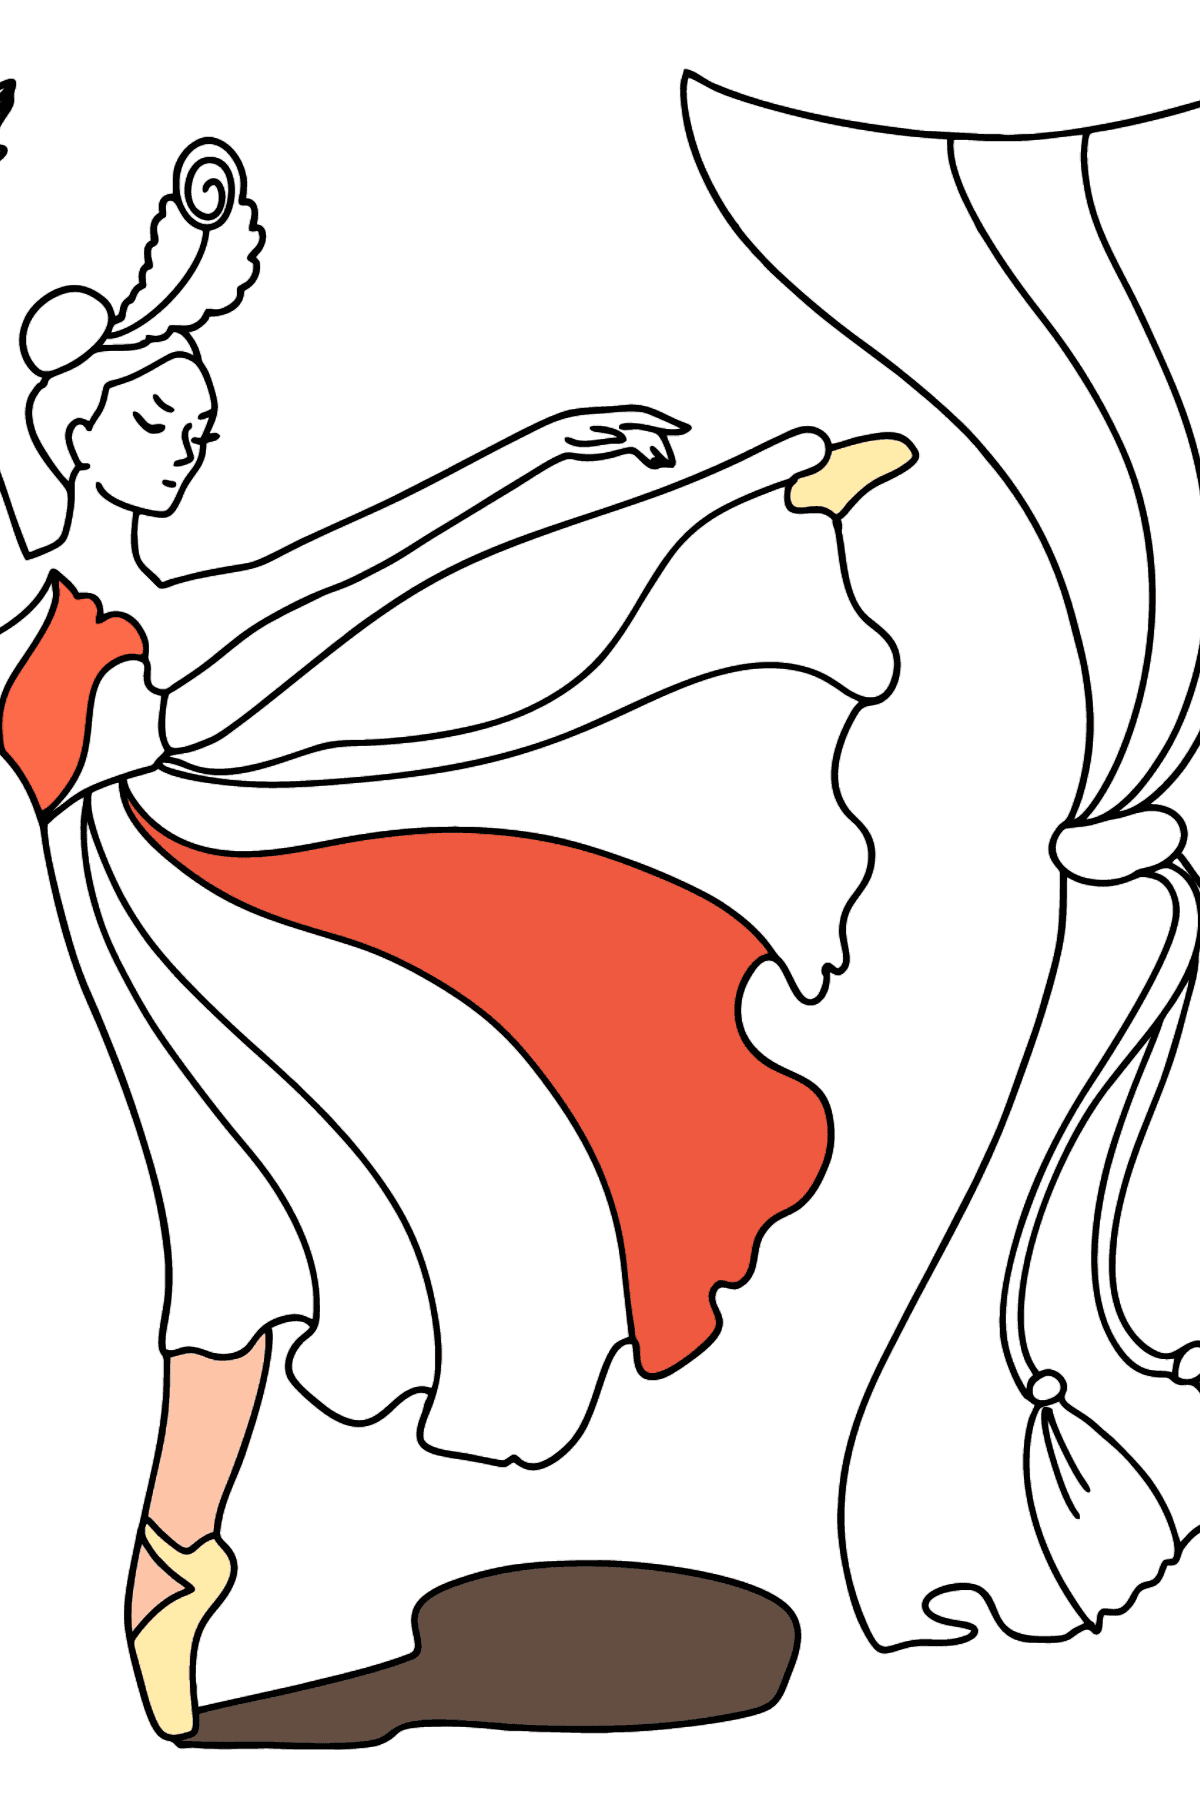 Dibujo para colorear - Bailarina con vestido rojo - Dibujos para Colorear para Niños